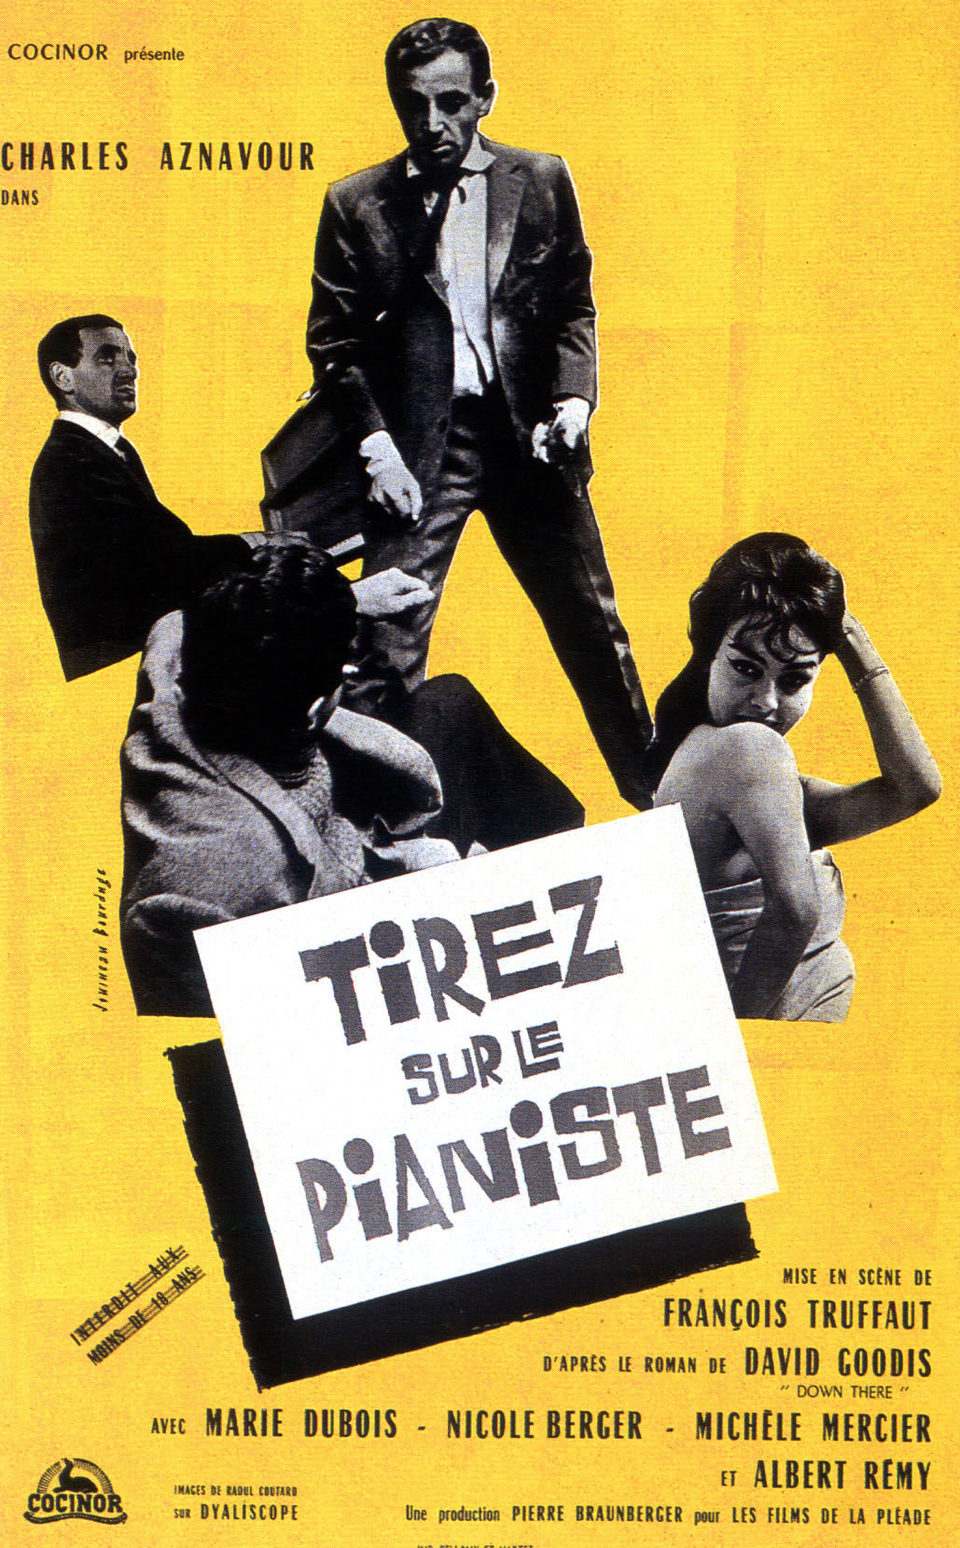 Cartel de Tirad sobre el pianista - Francia